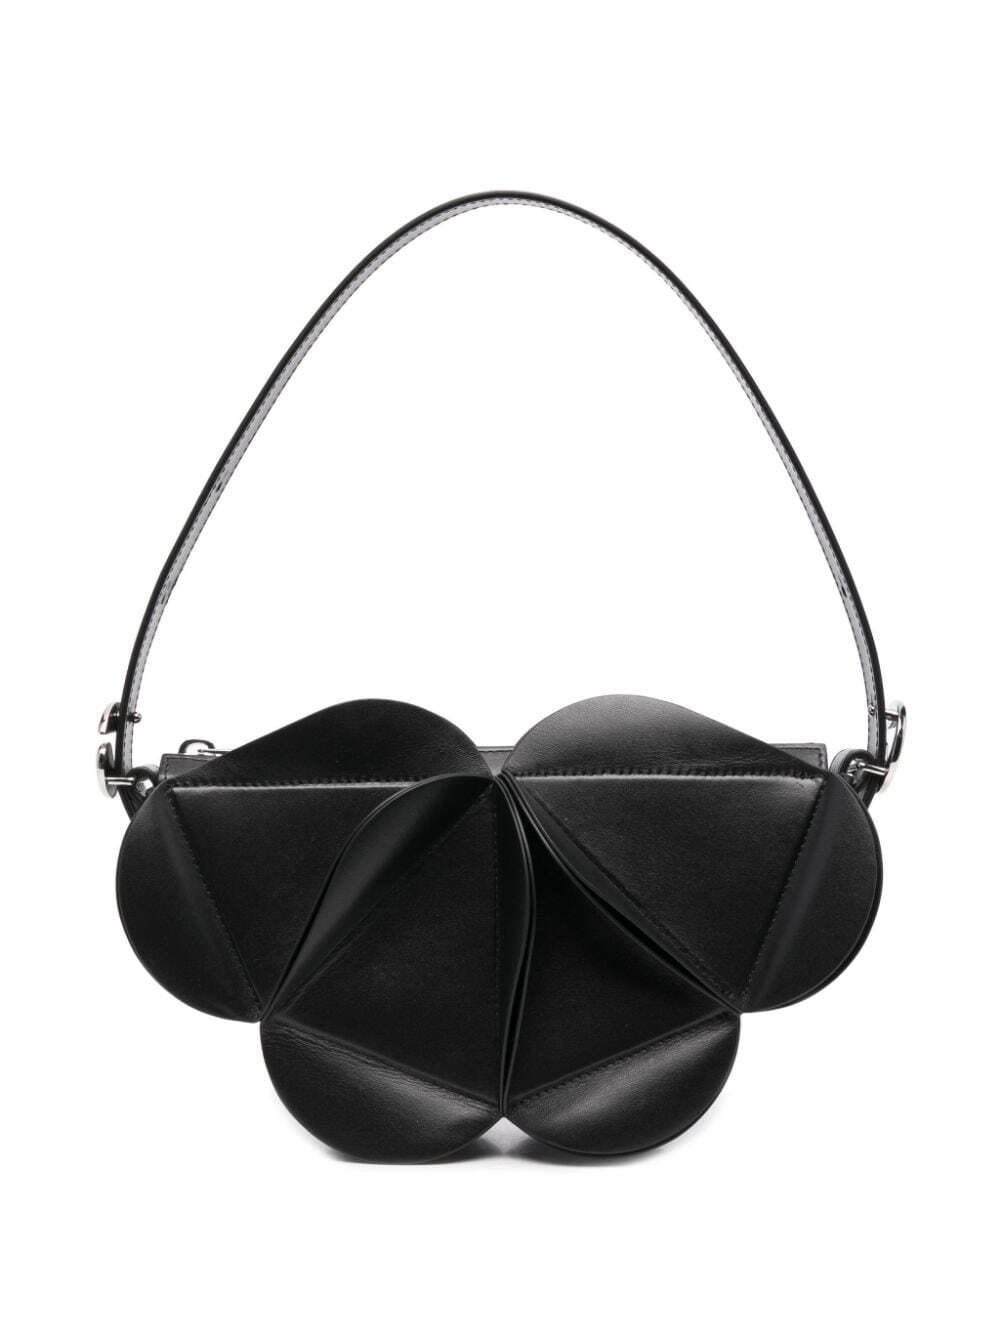 Coperni Origami shoulder bag - Black